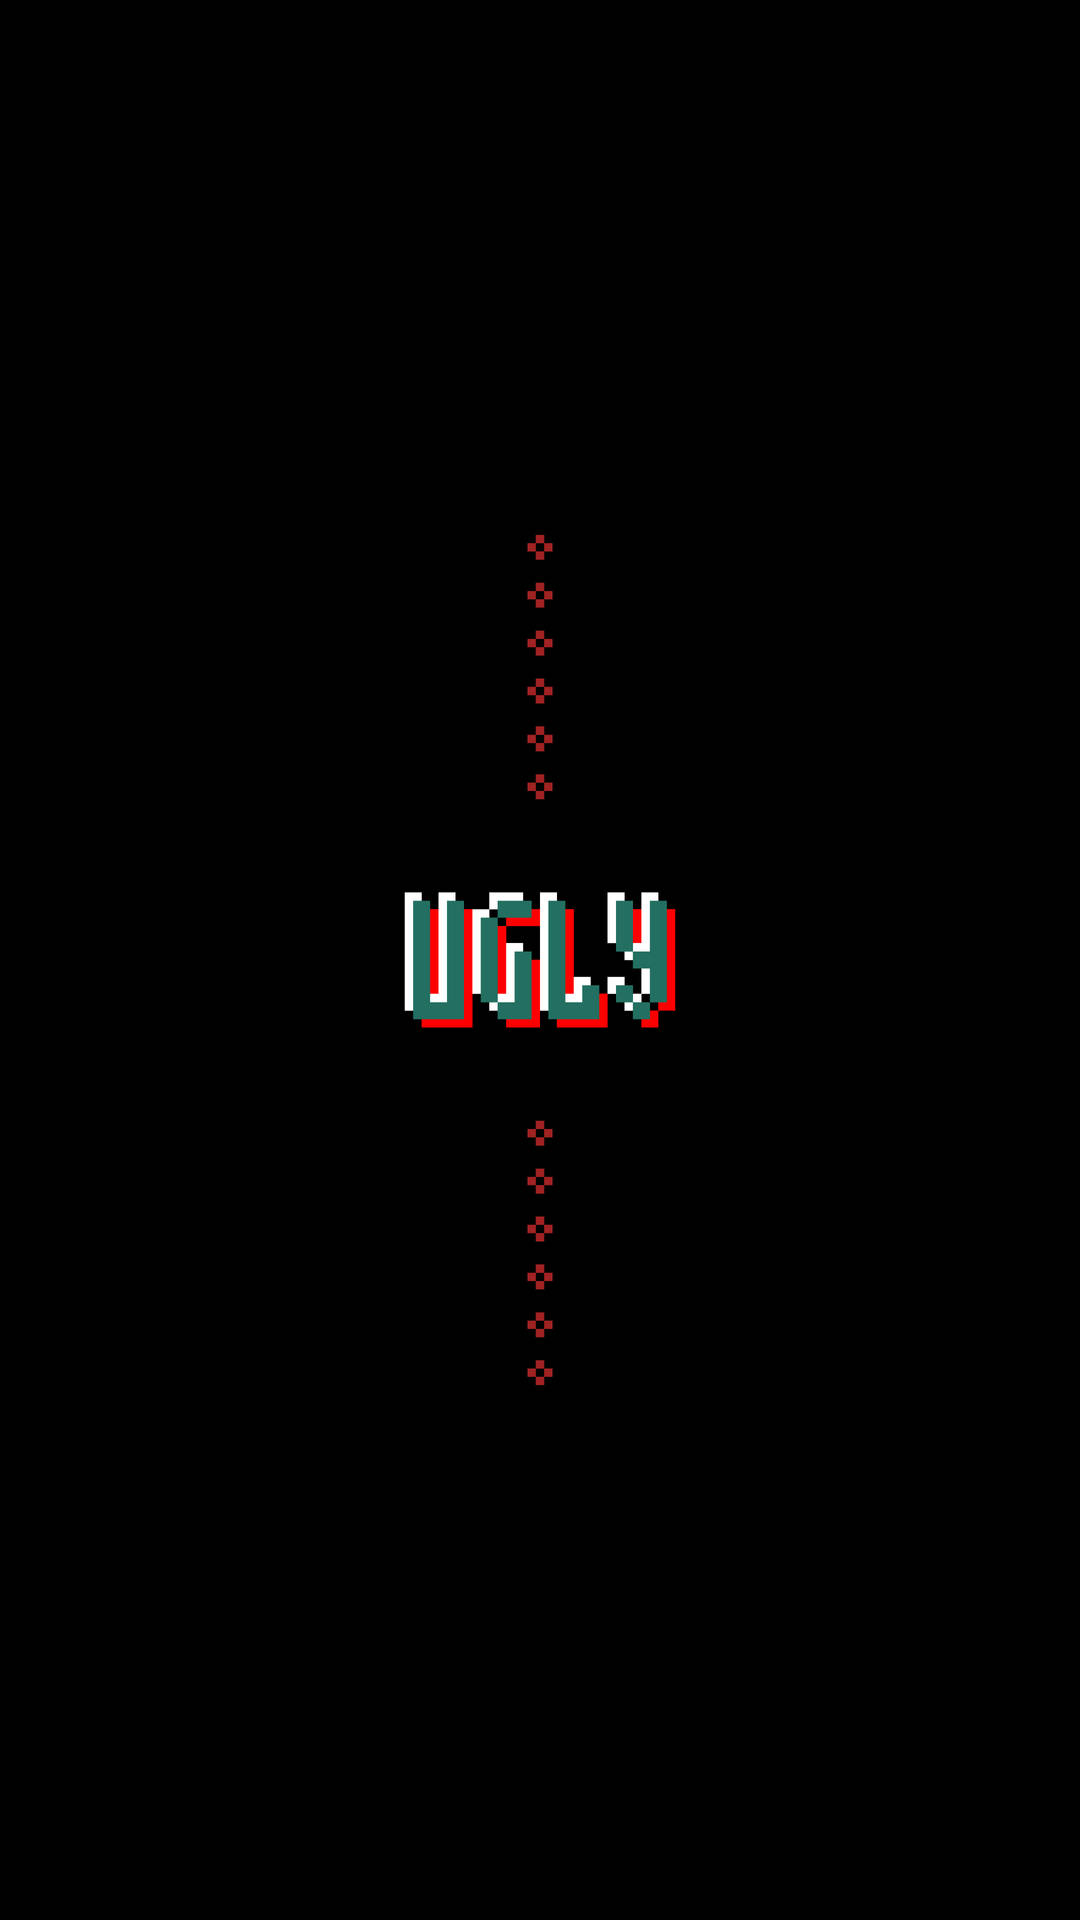 Ugly Pixel Font Wallpaper